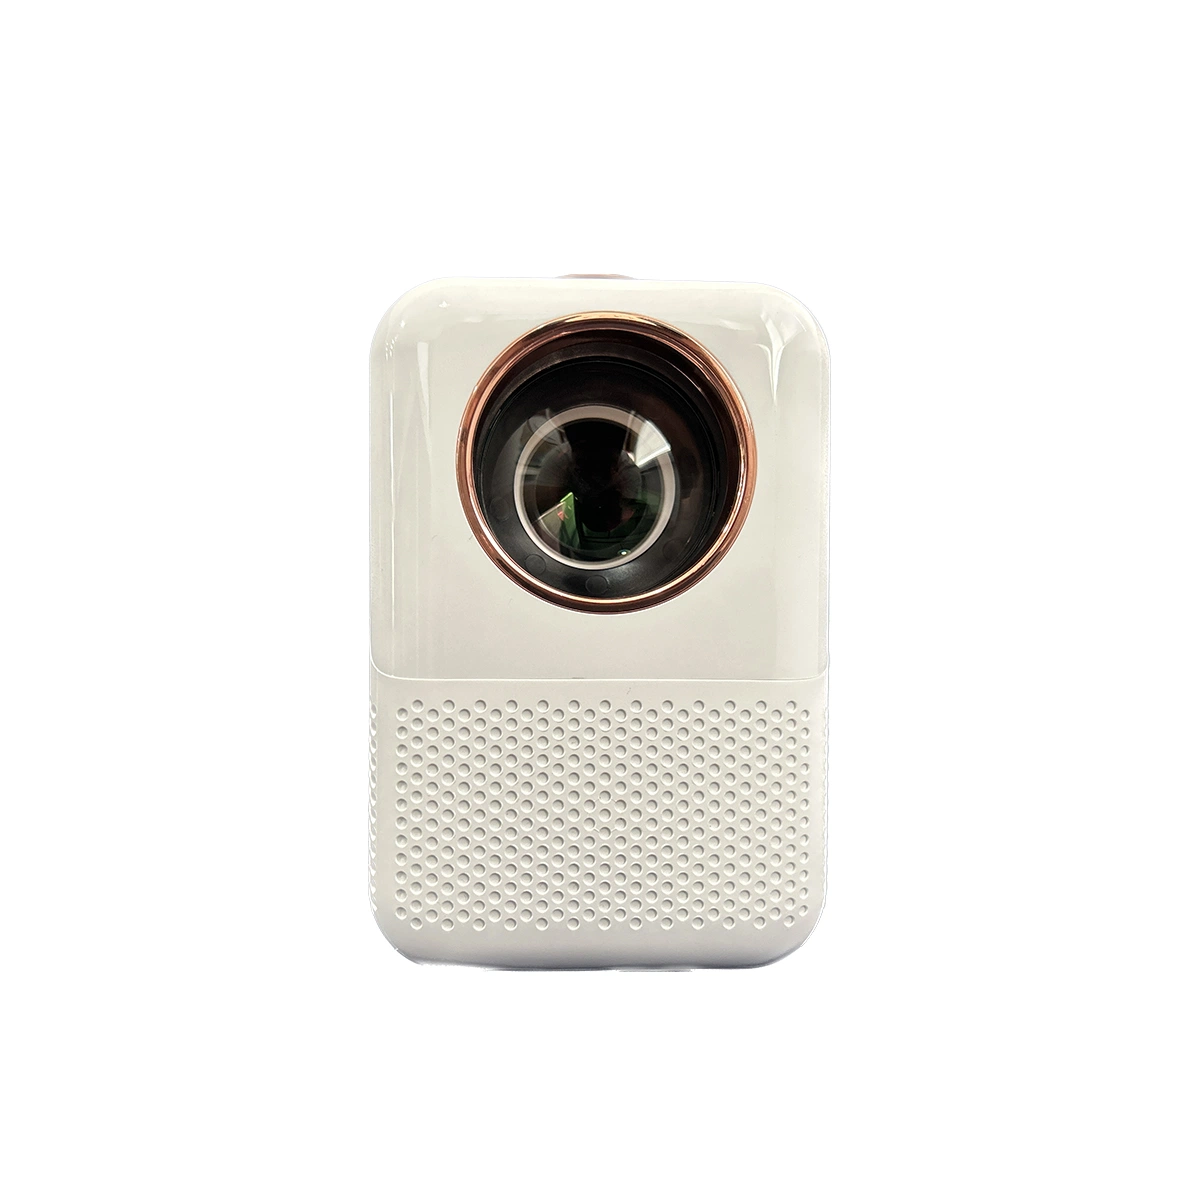 Prix bon marché Home cinéma Mini Portable LED Smart Pocket Cinema vidéo projecteur écran Téléphone